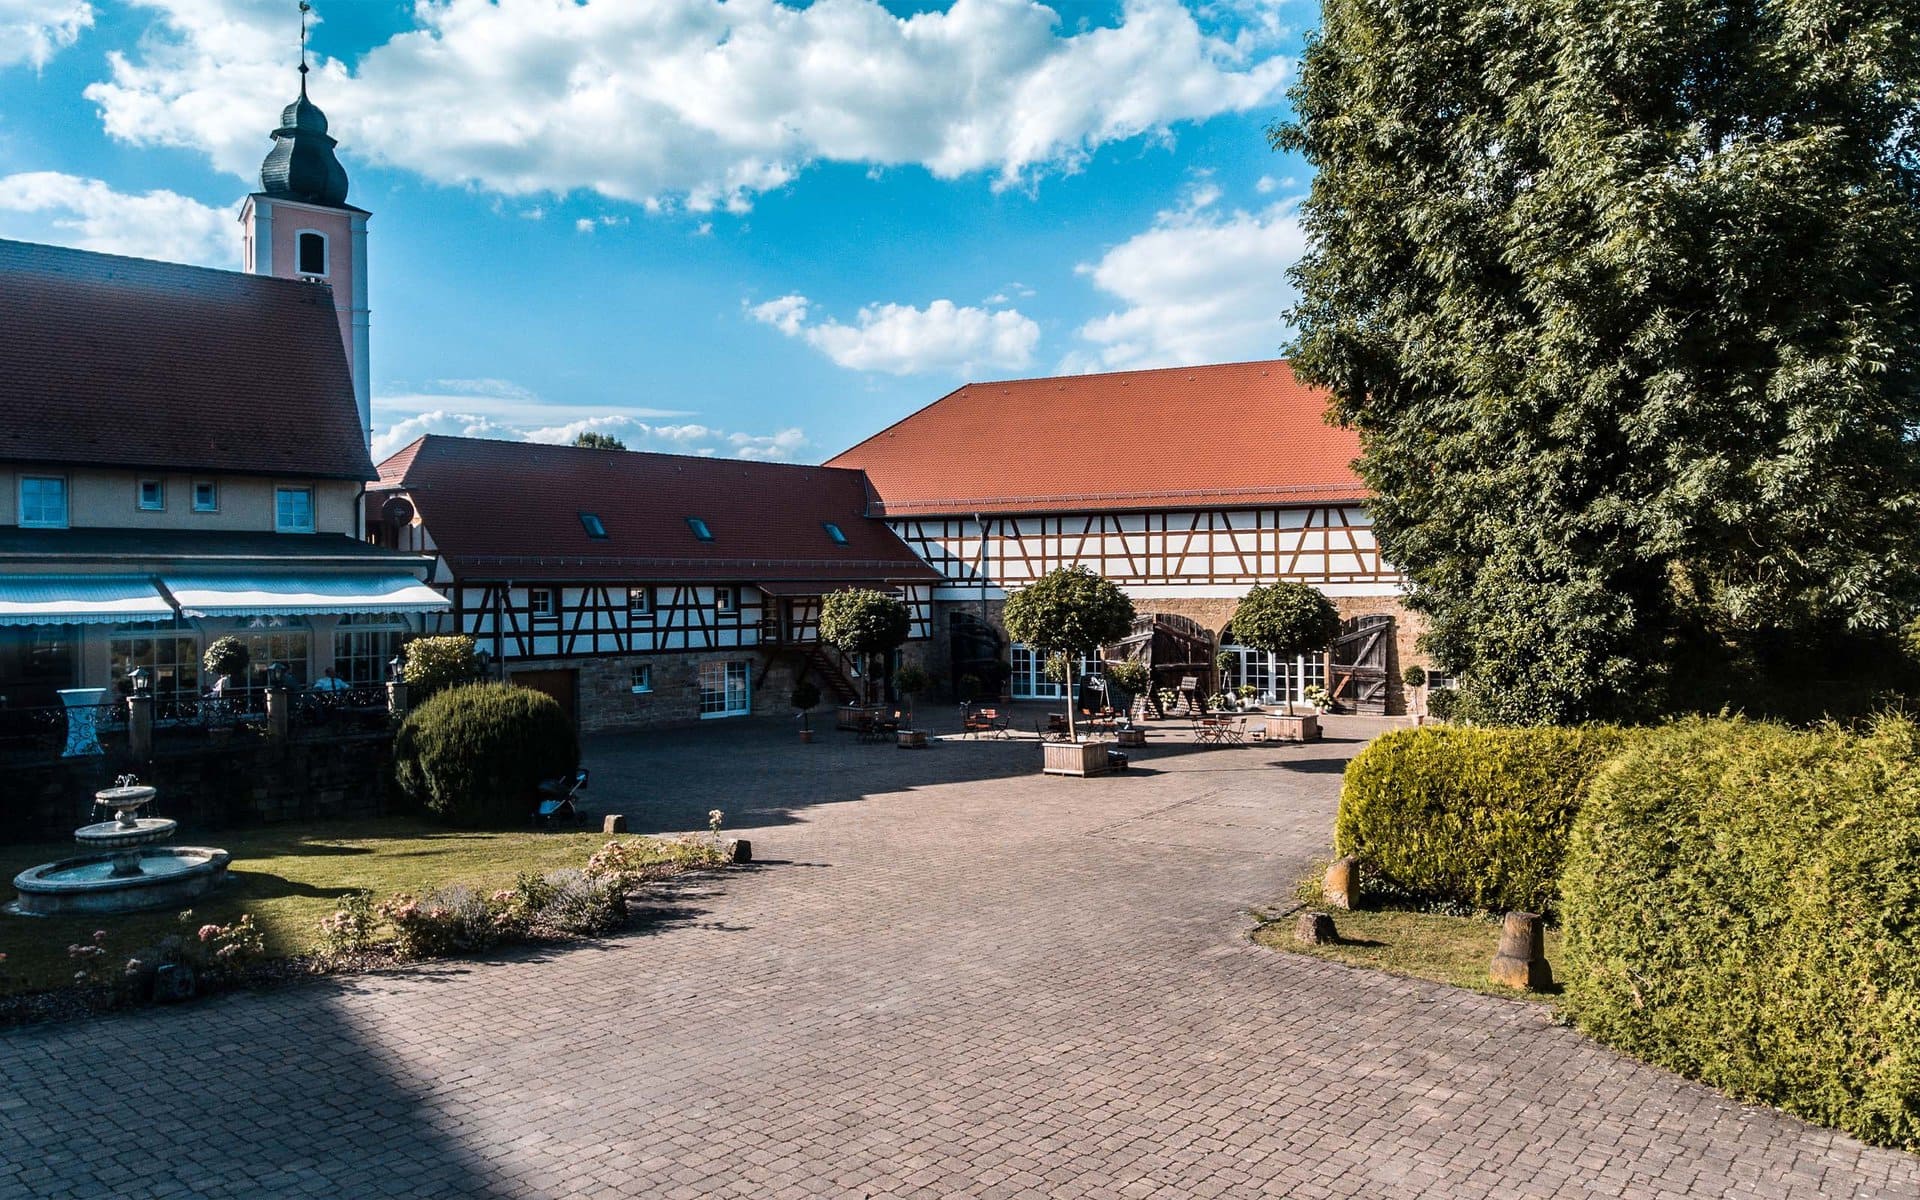 Traditionelle Fachwerkhäuser und eine Kirche mit Innenhof unter einem strahlend blauen Himmel auf Schloss Heinsheim.